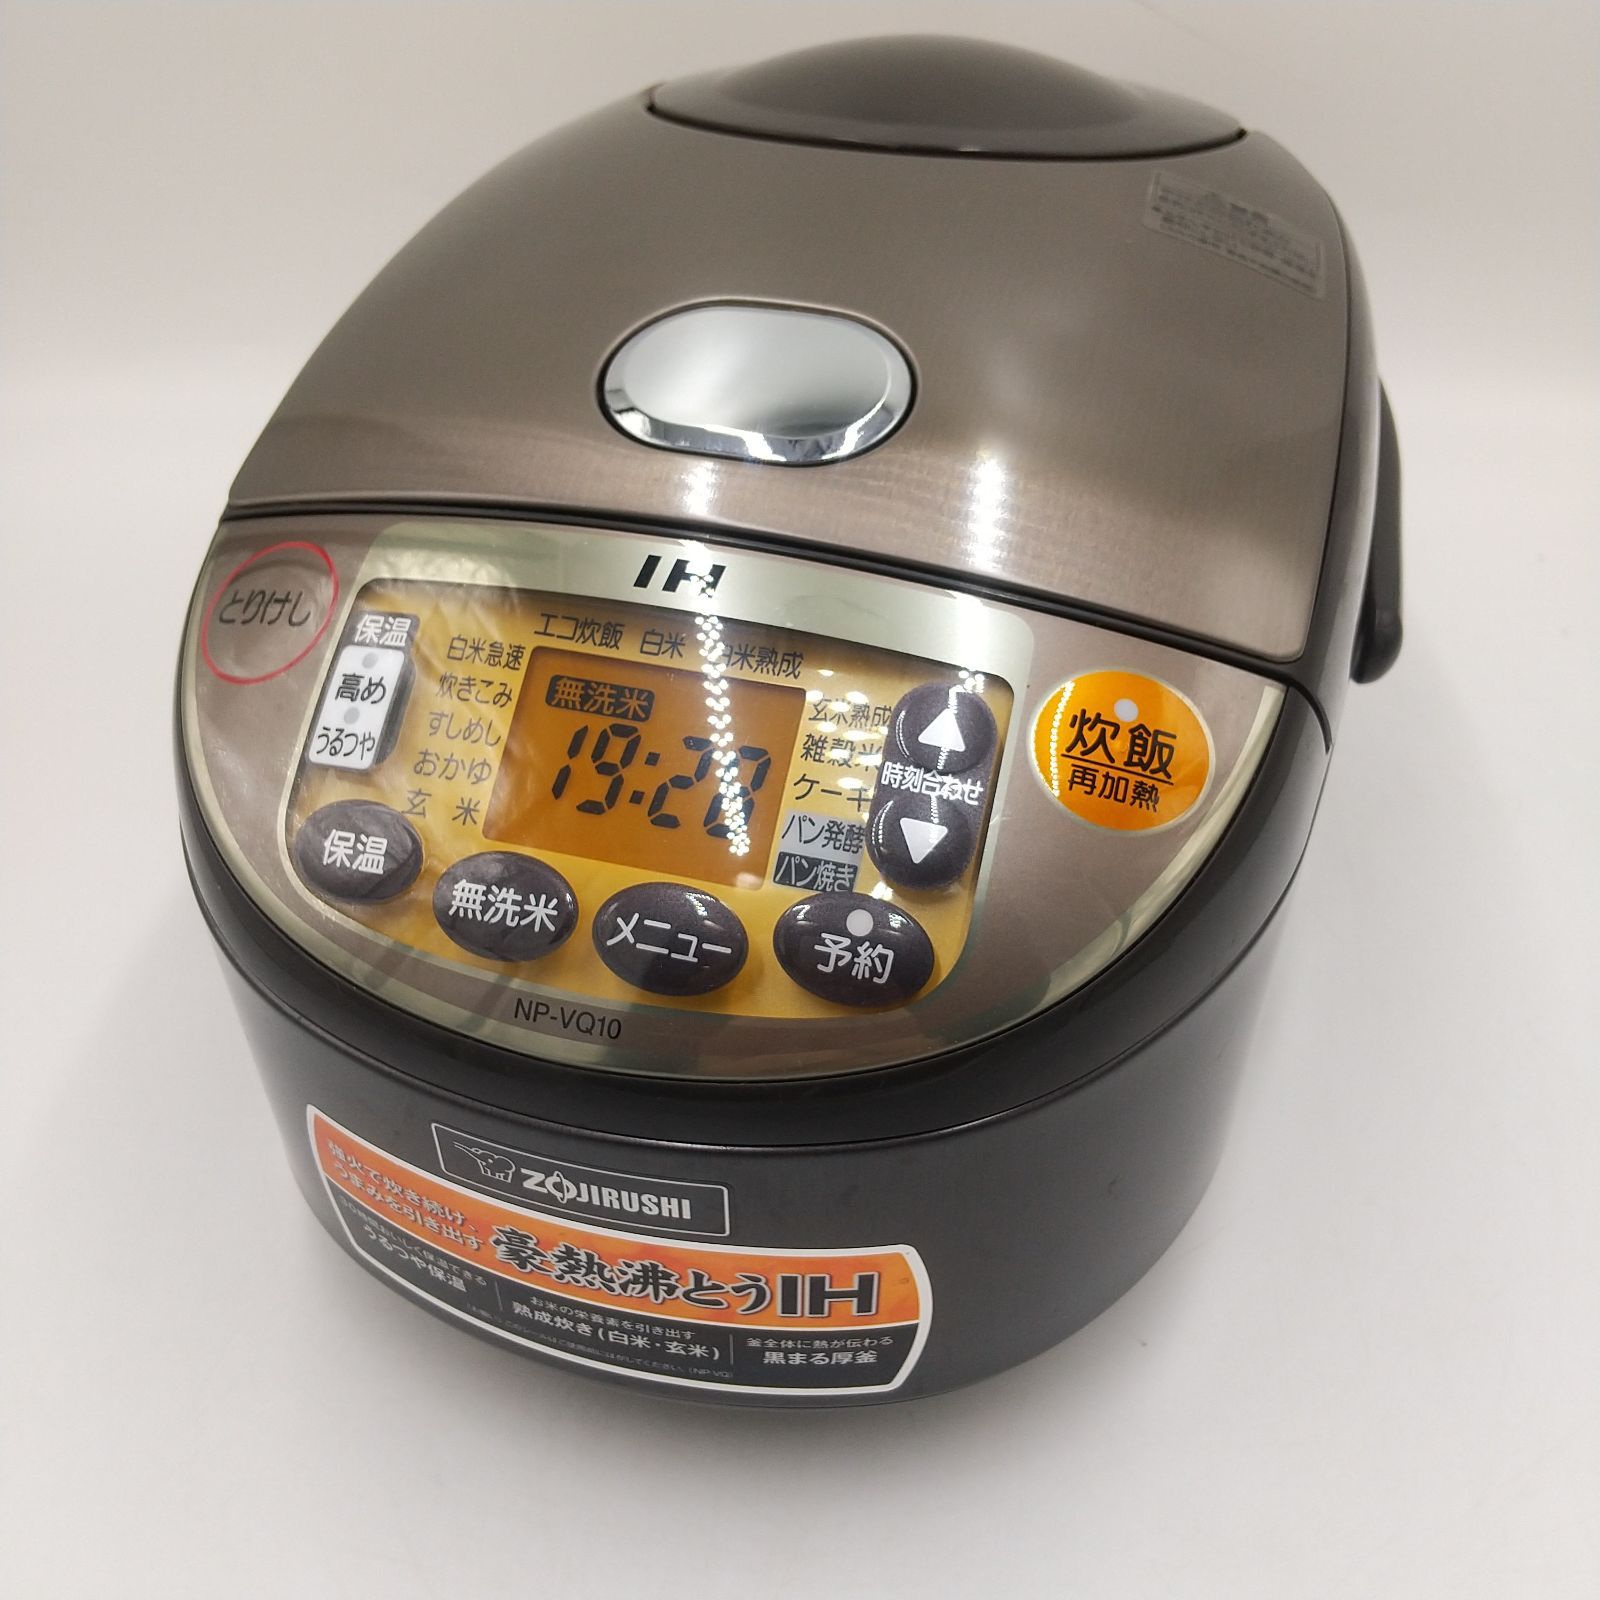 象印 炊飯器 NP-VQ10 5.5合炊き - 炊飯器・餅つき機